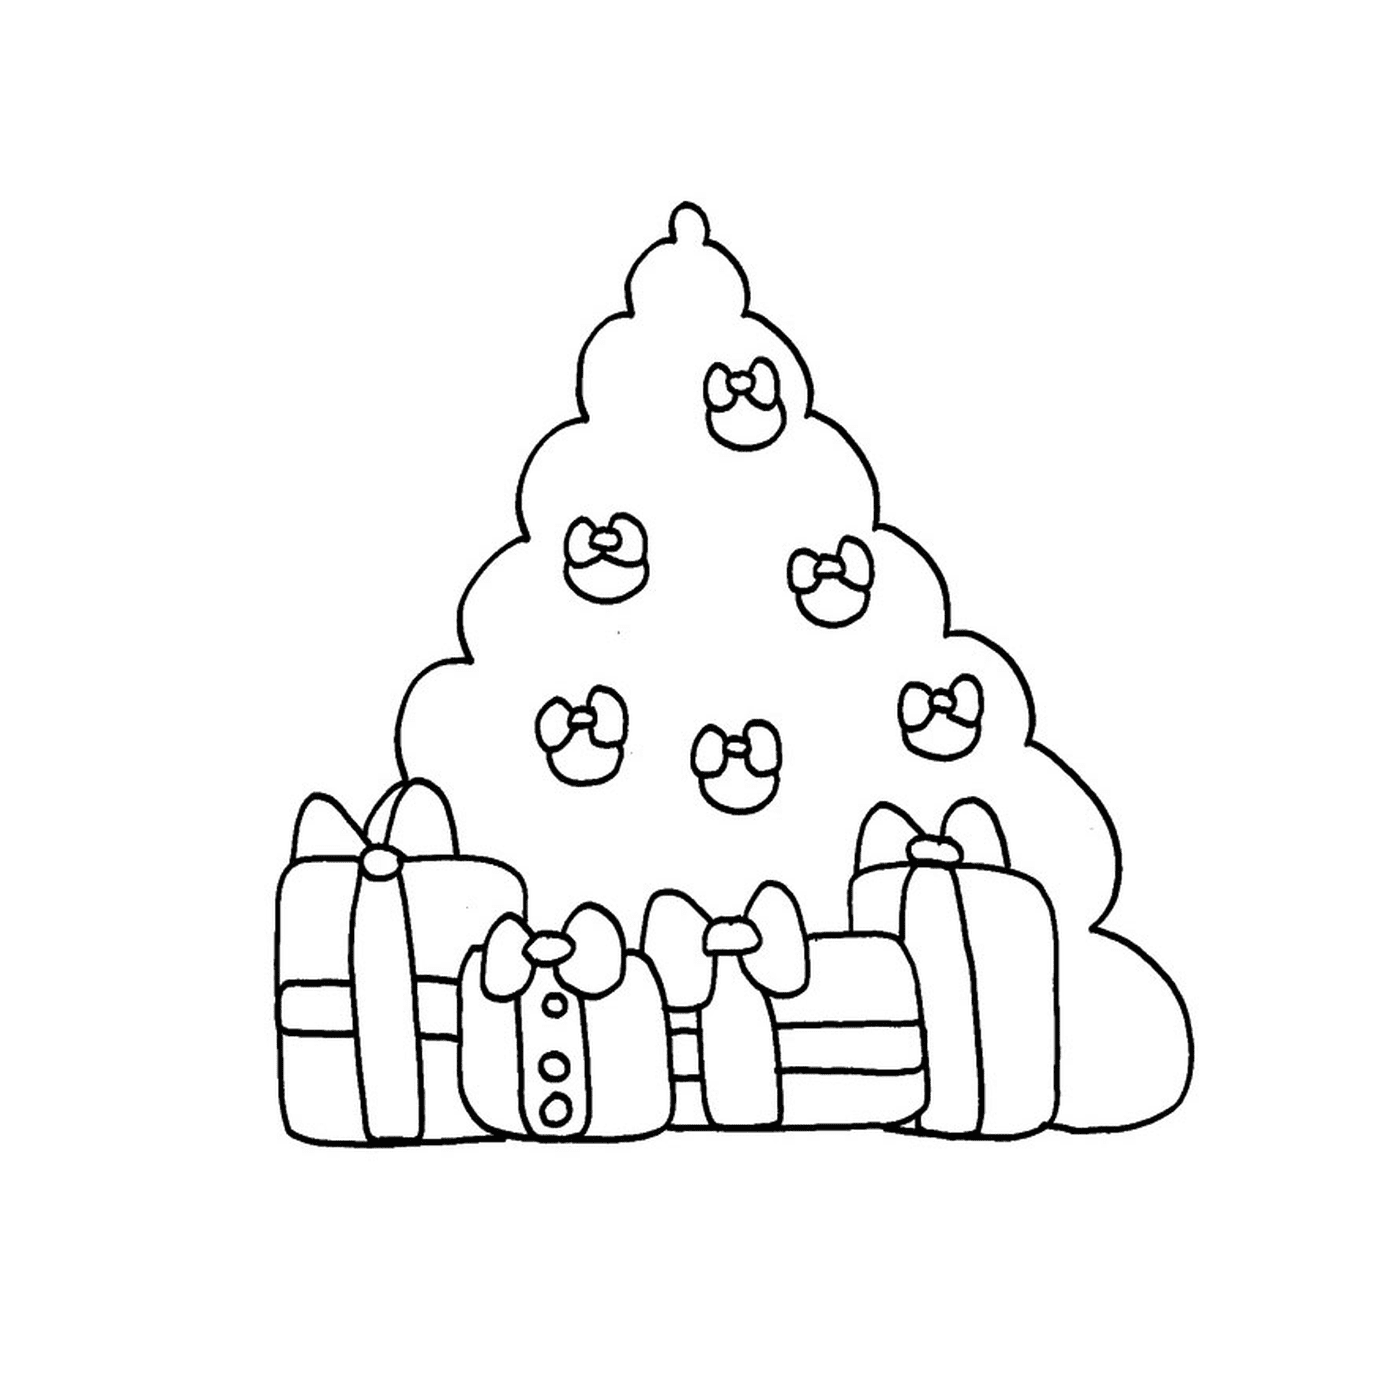  एक क्रिसमस का पेड़ जिसमें तोहफे दिए गए हैं 